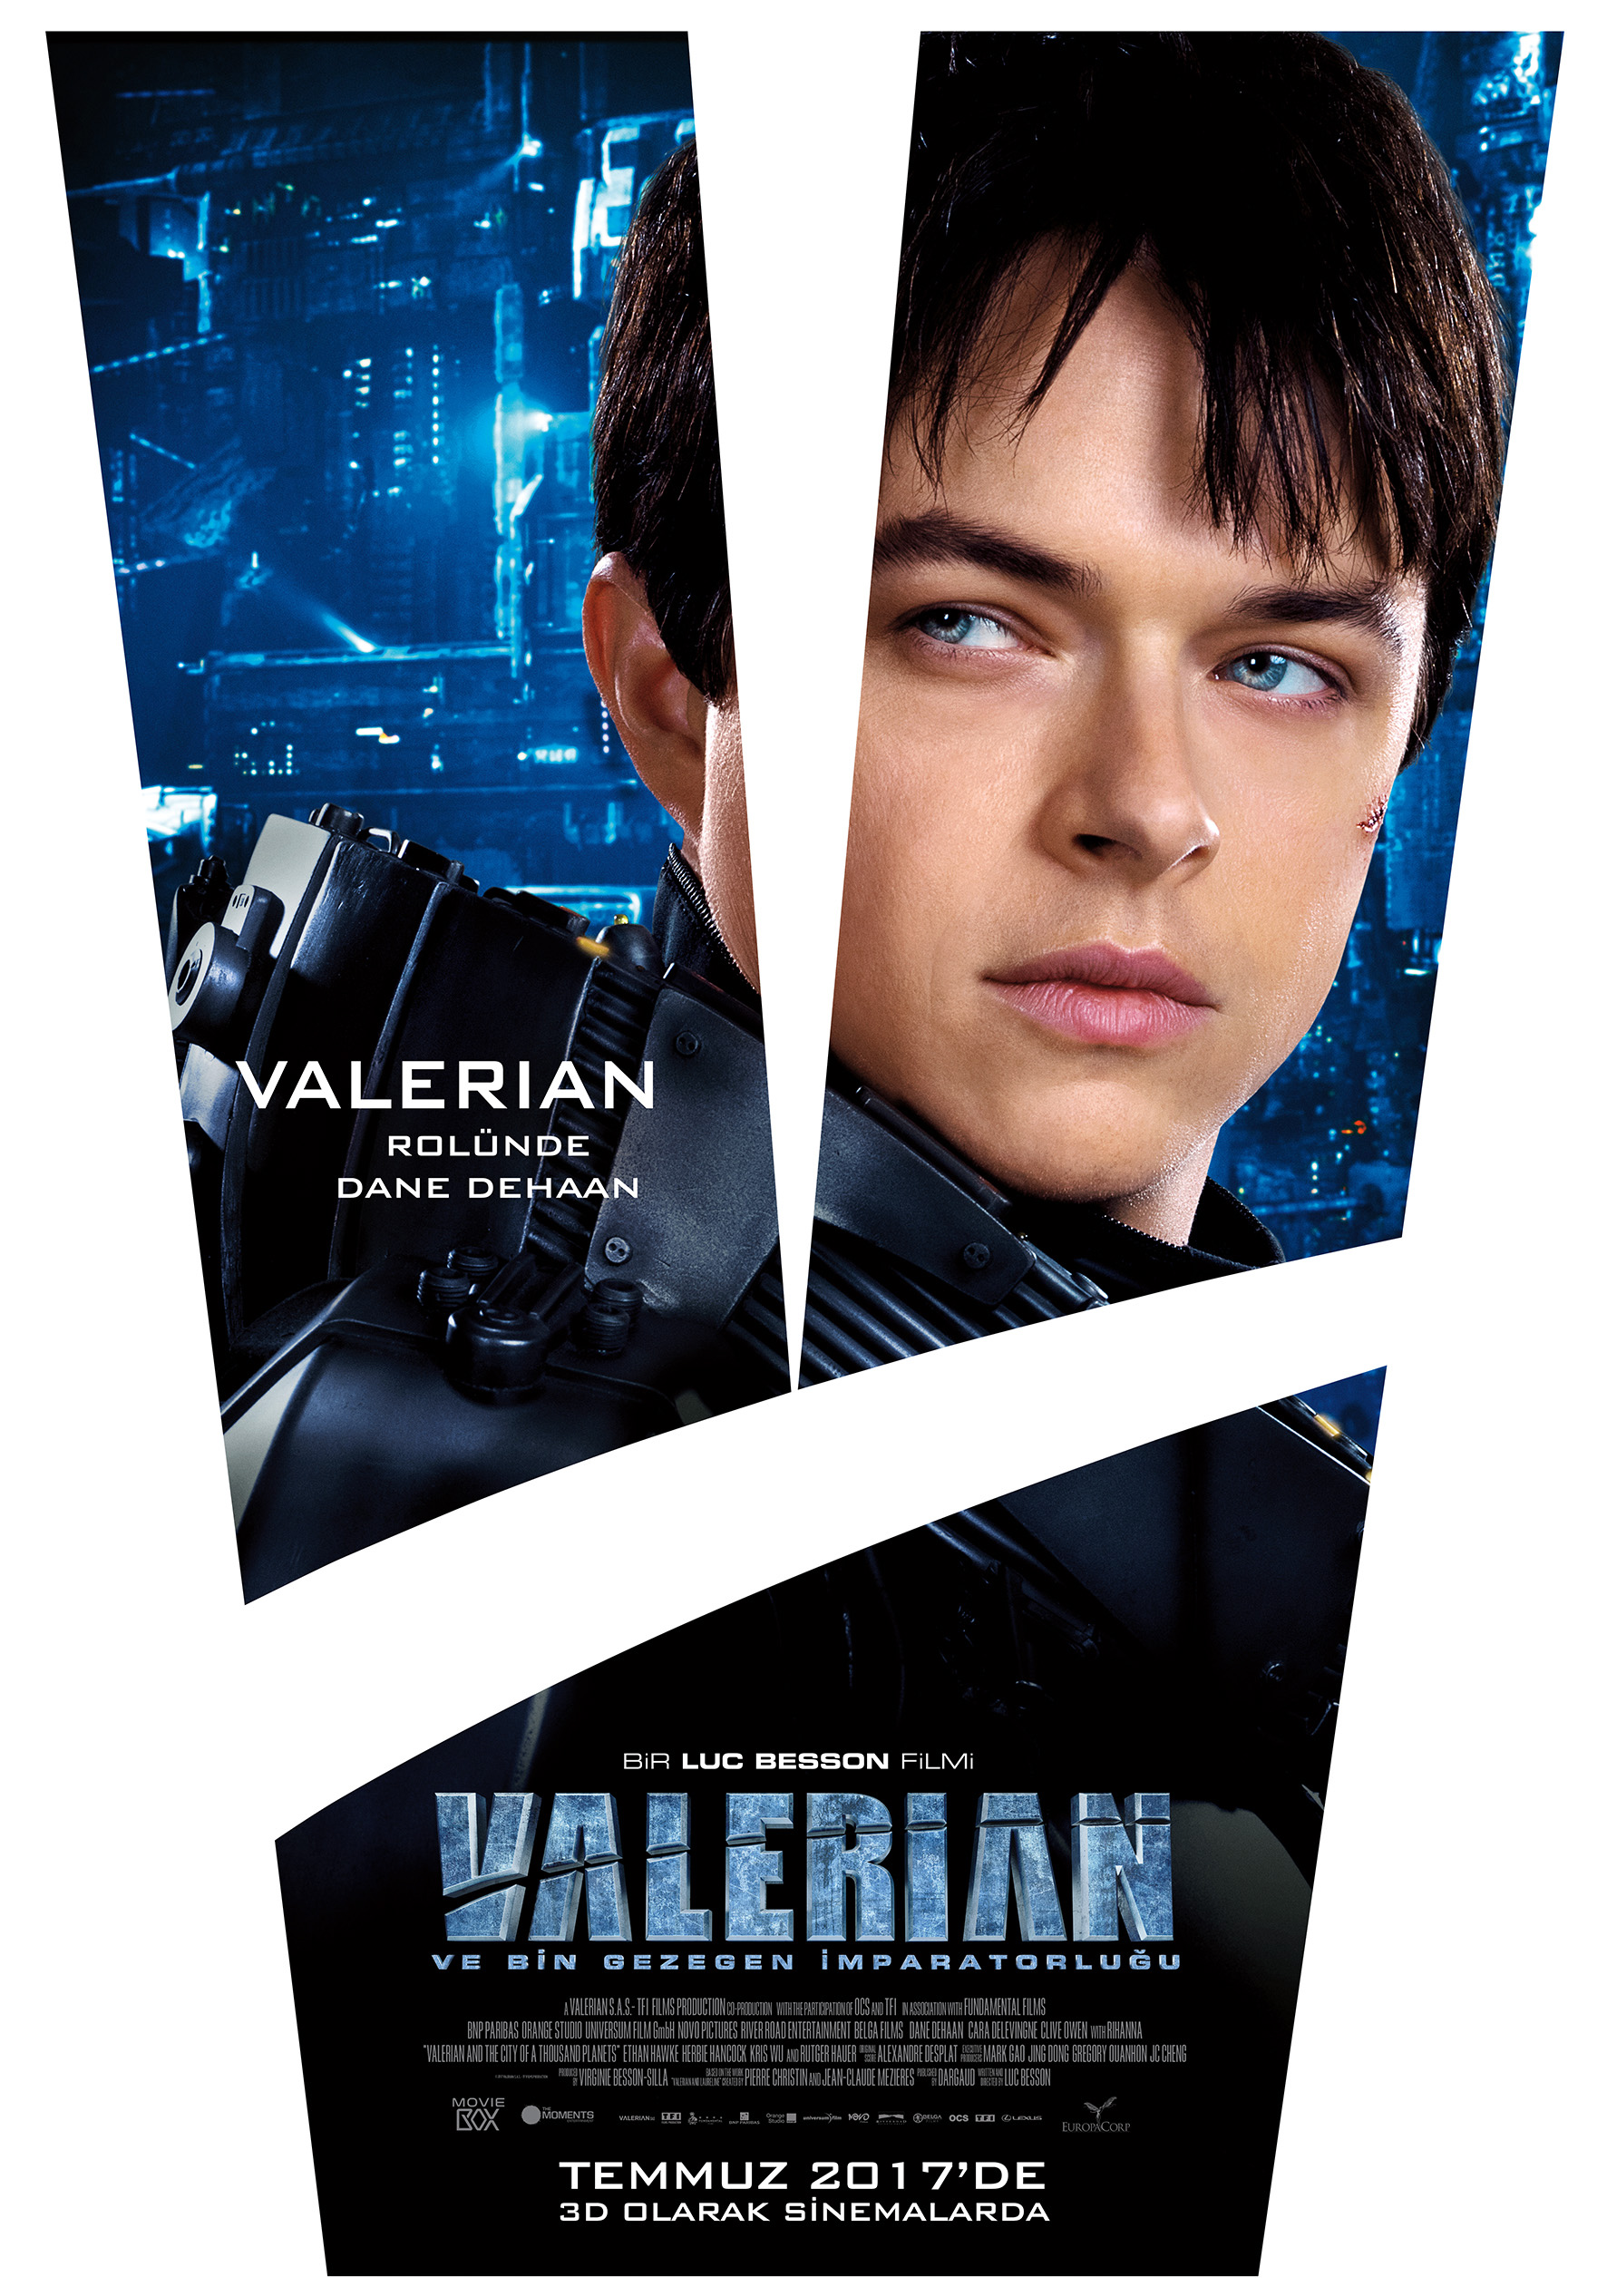 Valerian ve Bin Gezegen İmparatorluğu 2 – Valerian Karakter Afisleri Valerian